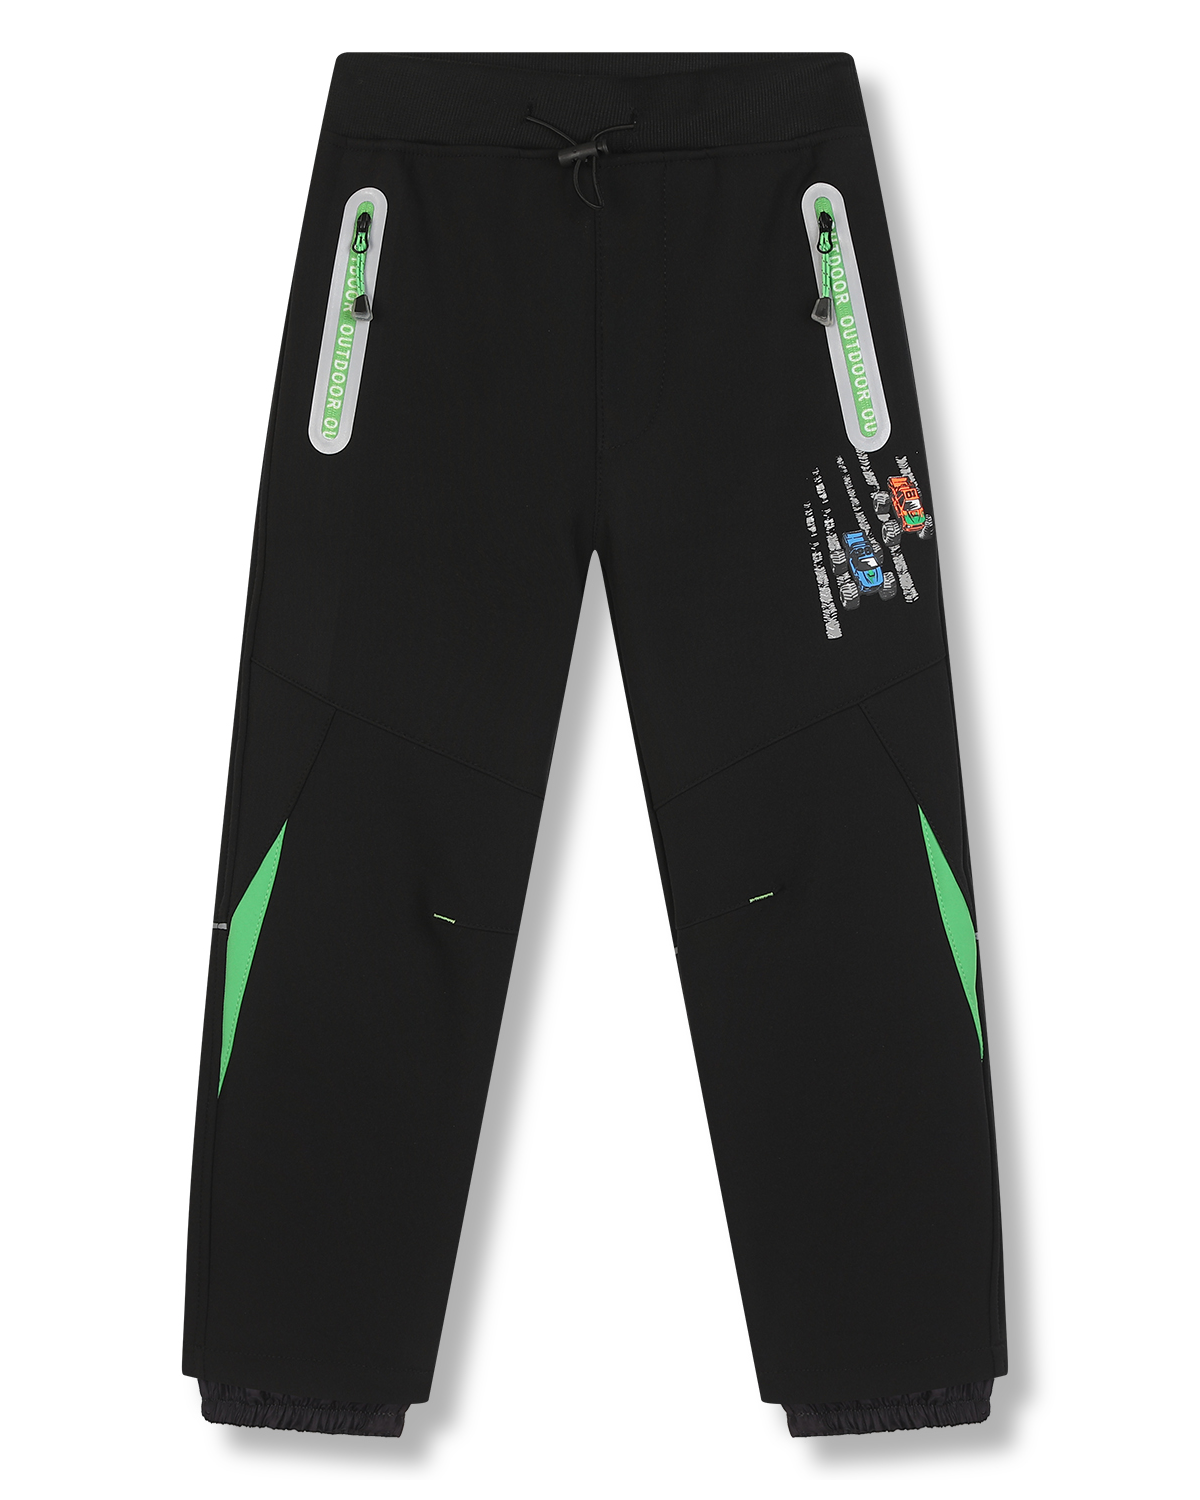 Chlapecké softshellové kalhoty, zateplené - KUGO HK5617, černá / zelené zipy Barva: Černá, Velikost: 104